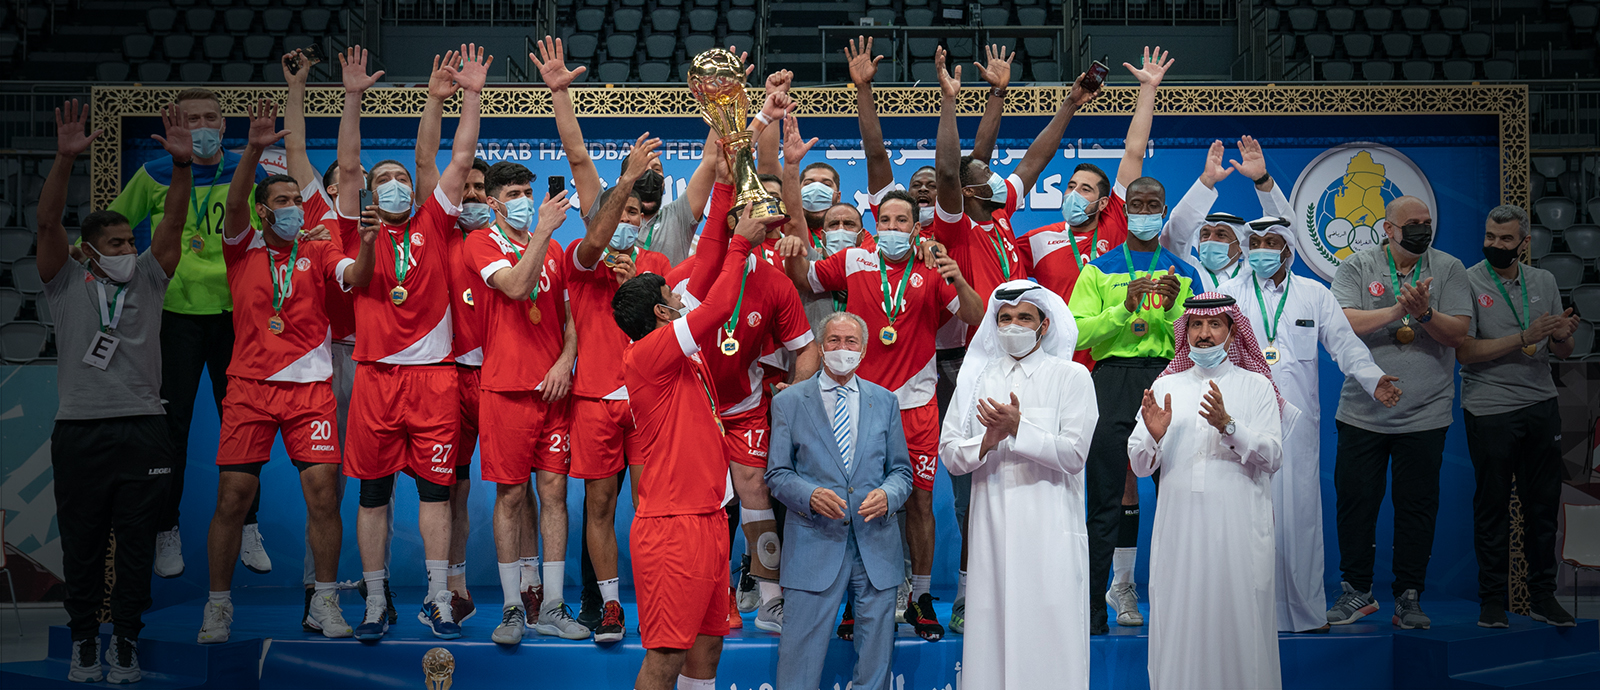 الشيخ جوعان بن حمد يتوّج الشمال بطلاً لكأس السوبر العربي الثالثة لكرة اليد